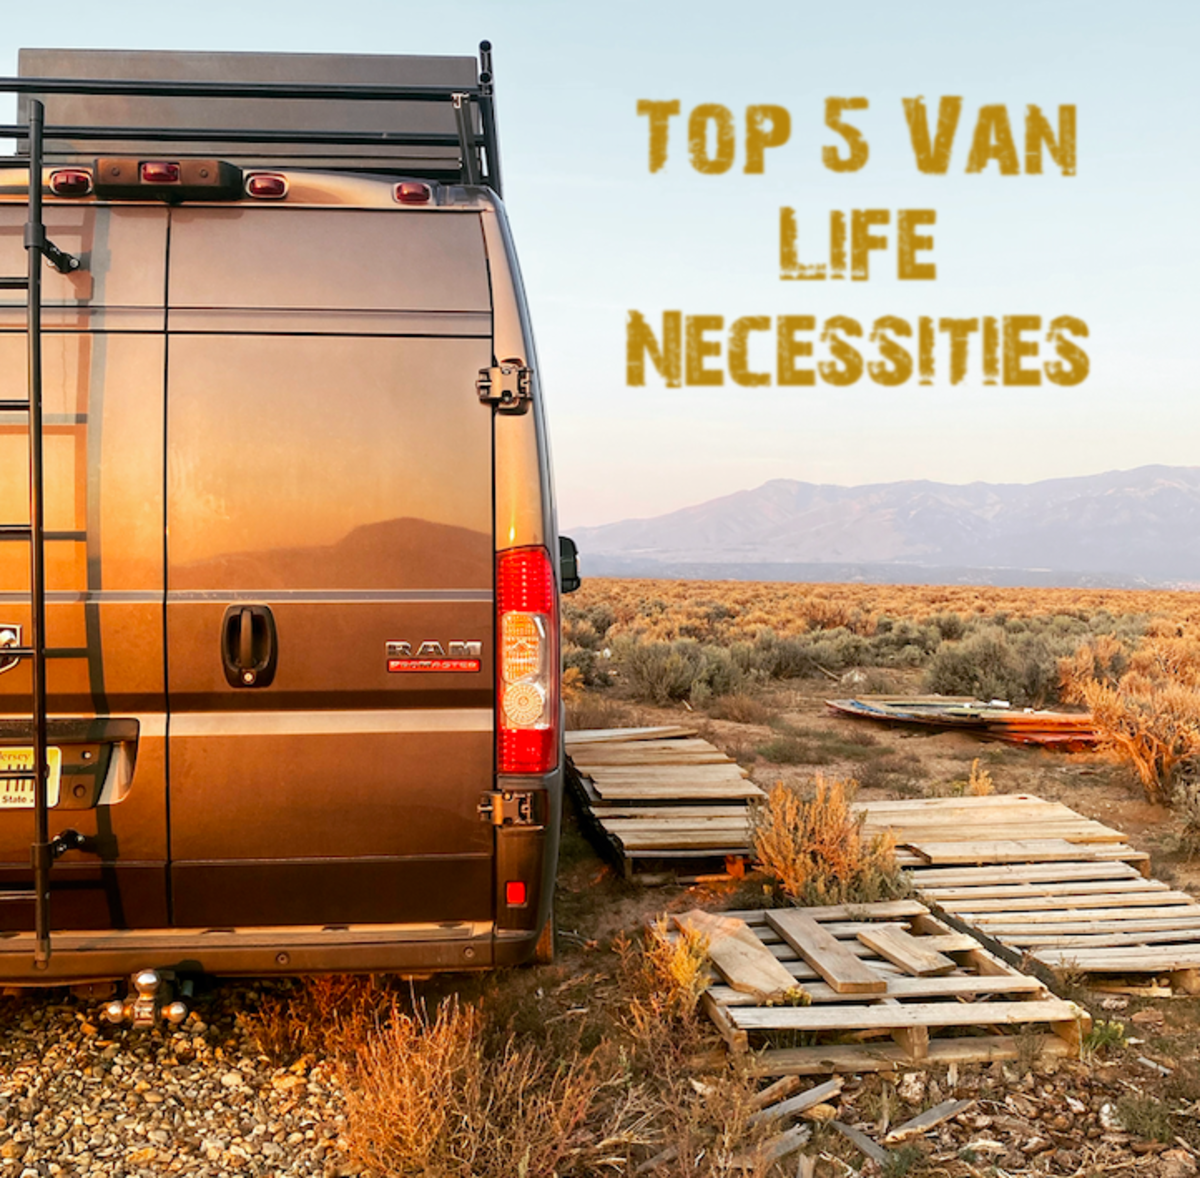 The Top 5 Vanlife Necessities